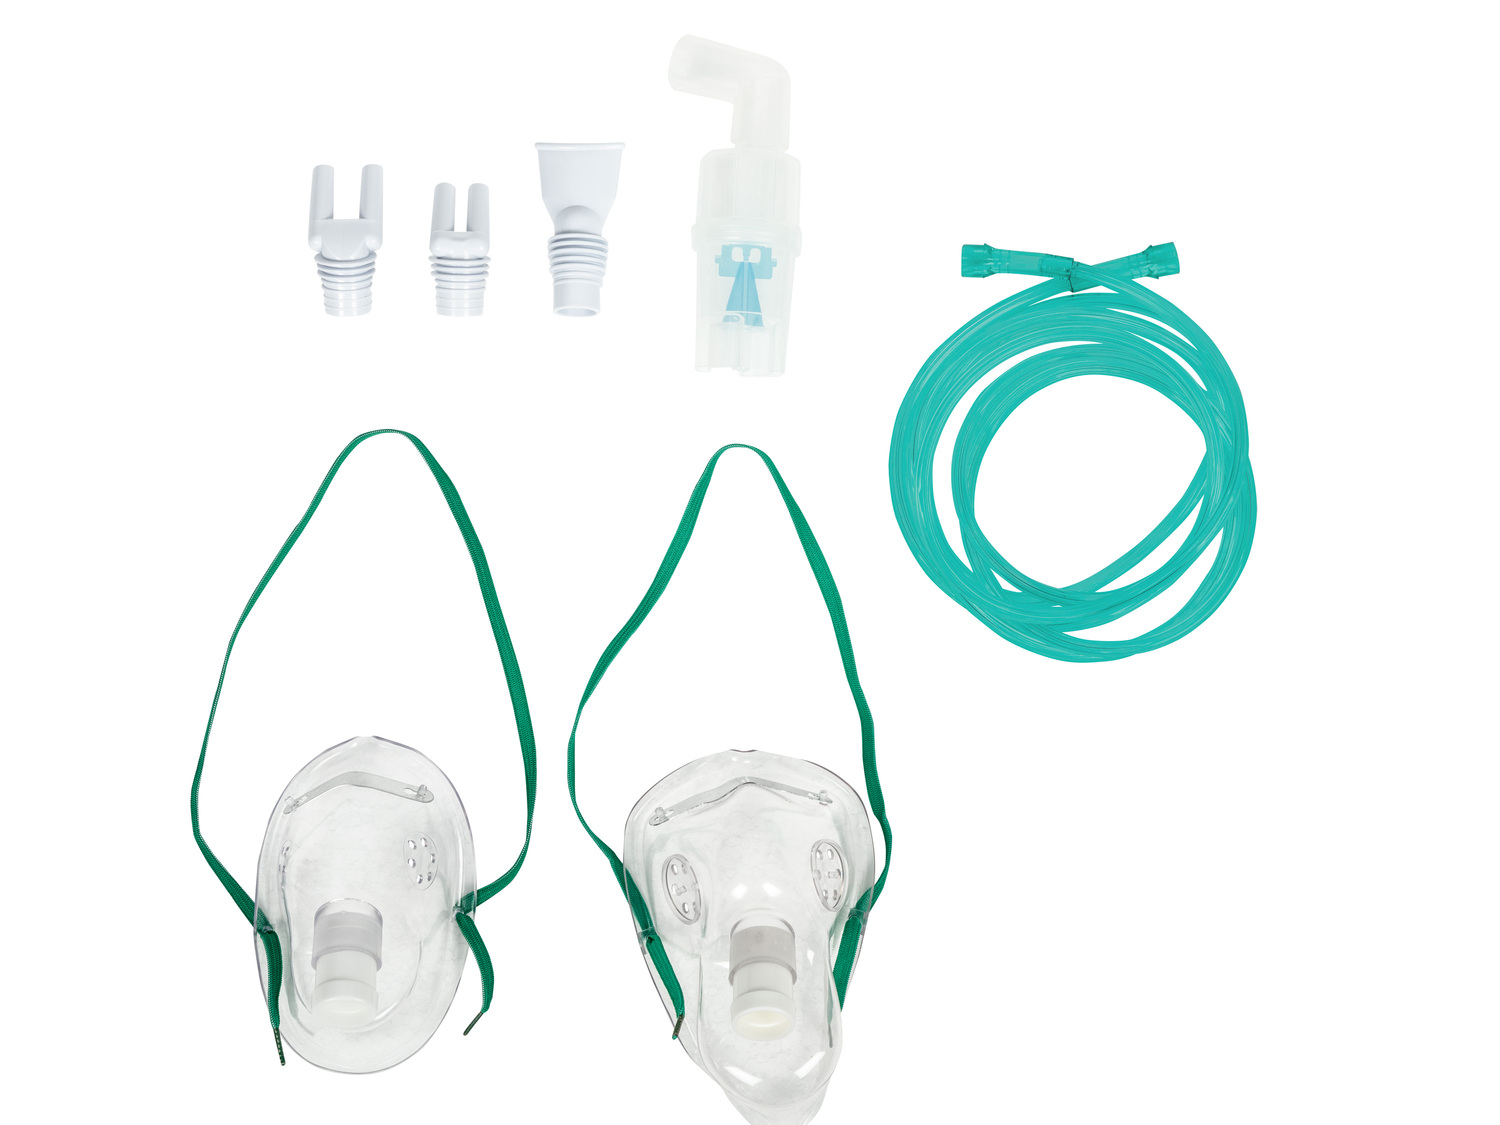 Inhalator Medisana, cena 99,00 PLN 
- do stosowania w przypadku przeziębienia, ...